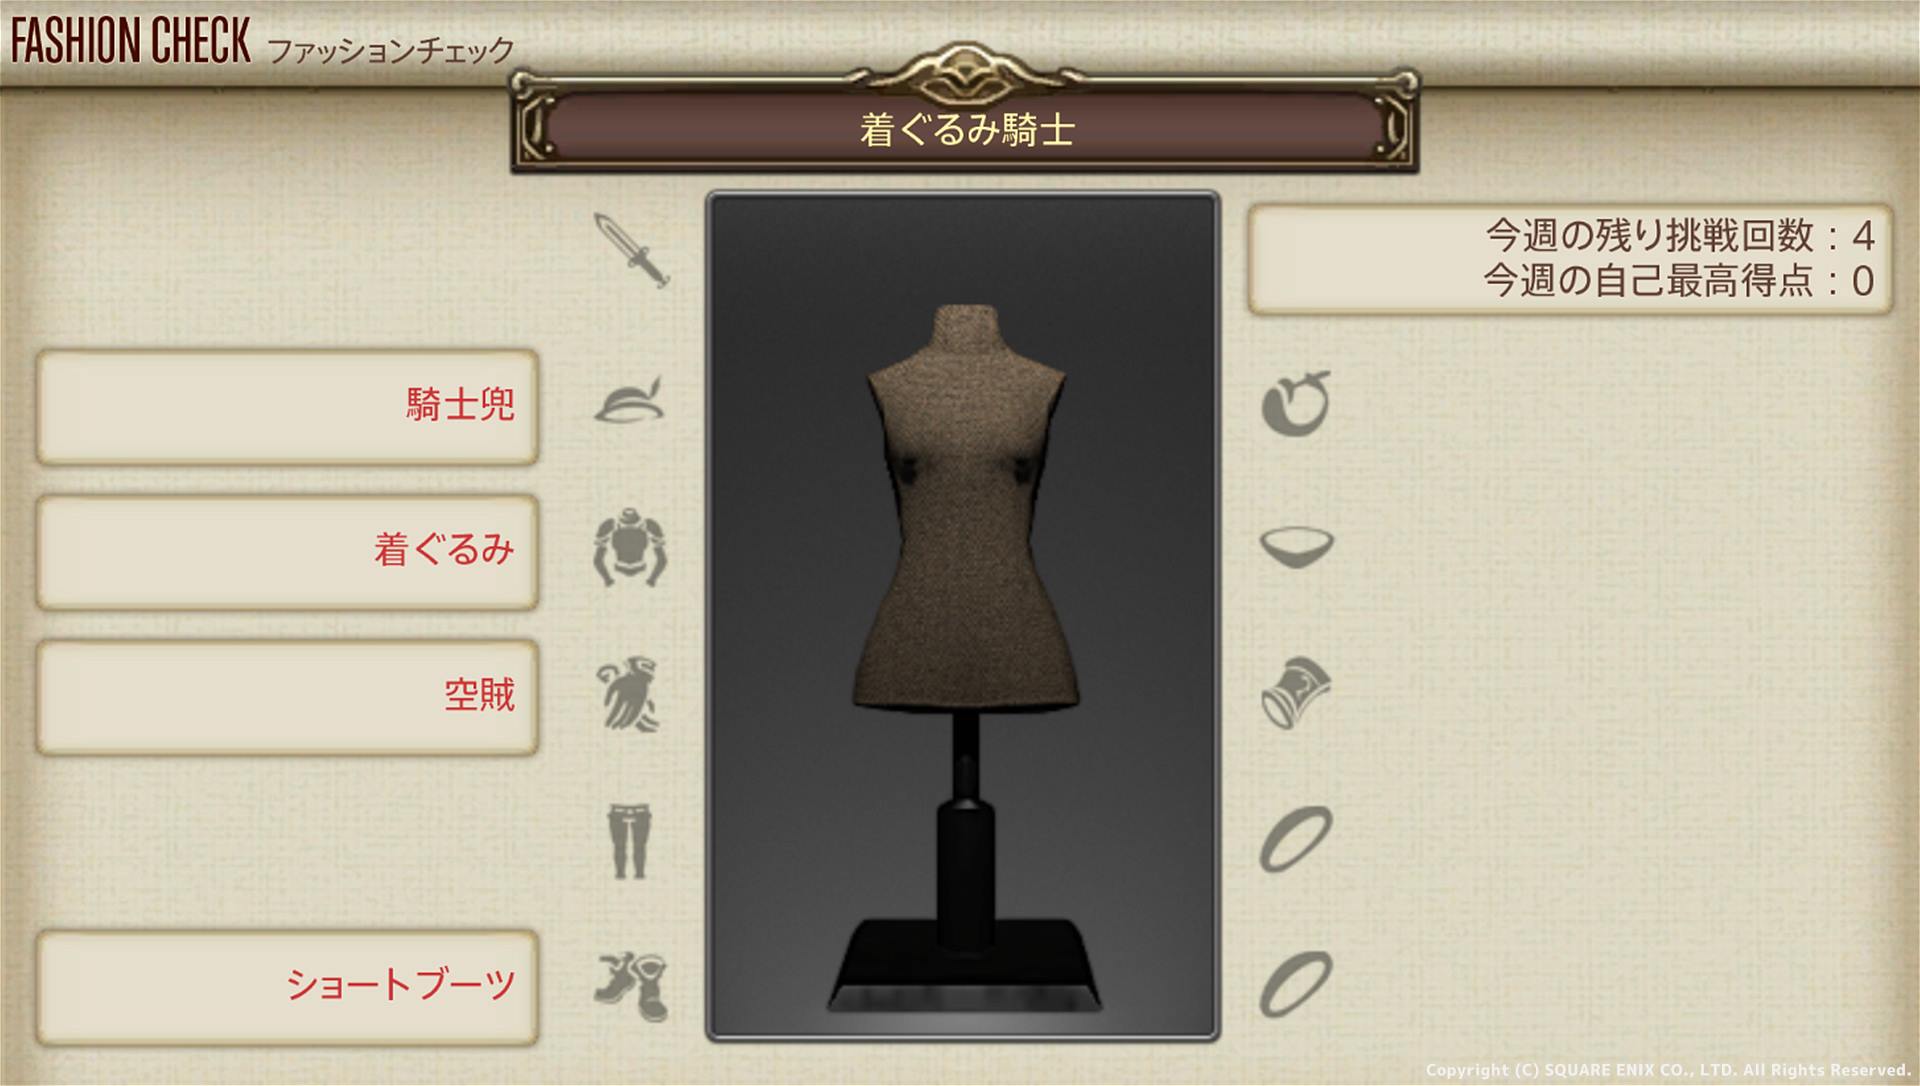 【FF14】12月6日発表ファッションチェック「着ぐるみ騎士」金評価・100点評価装備